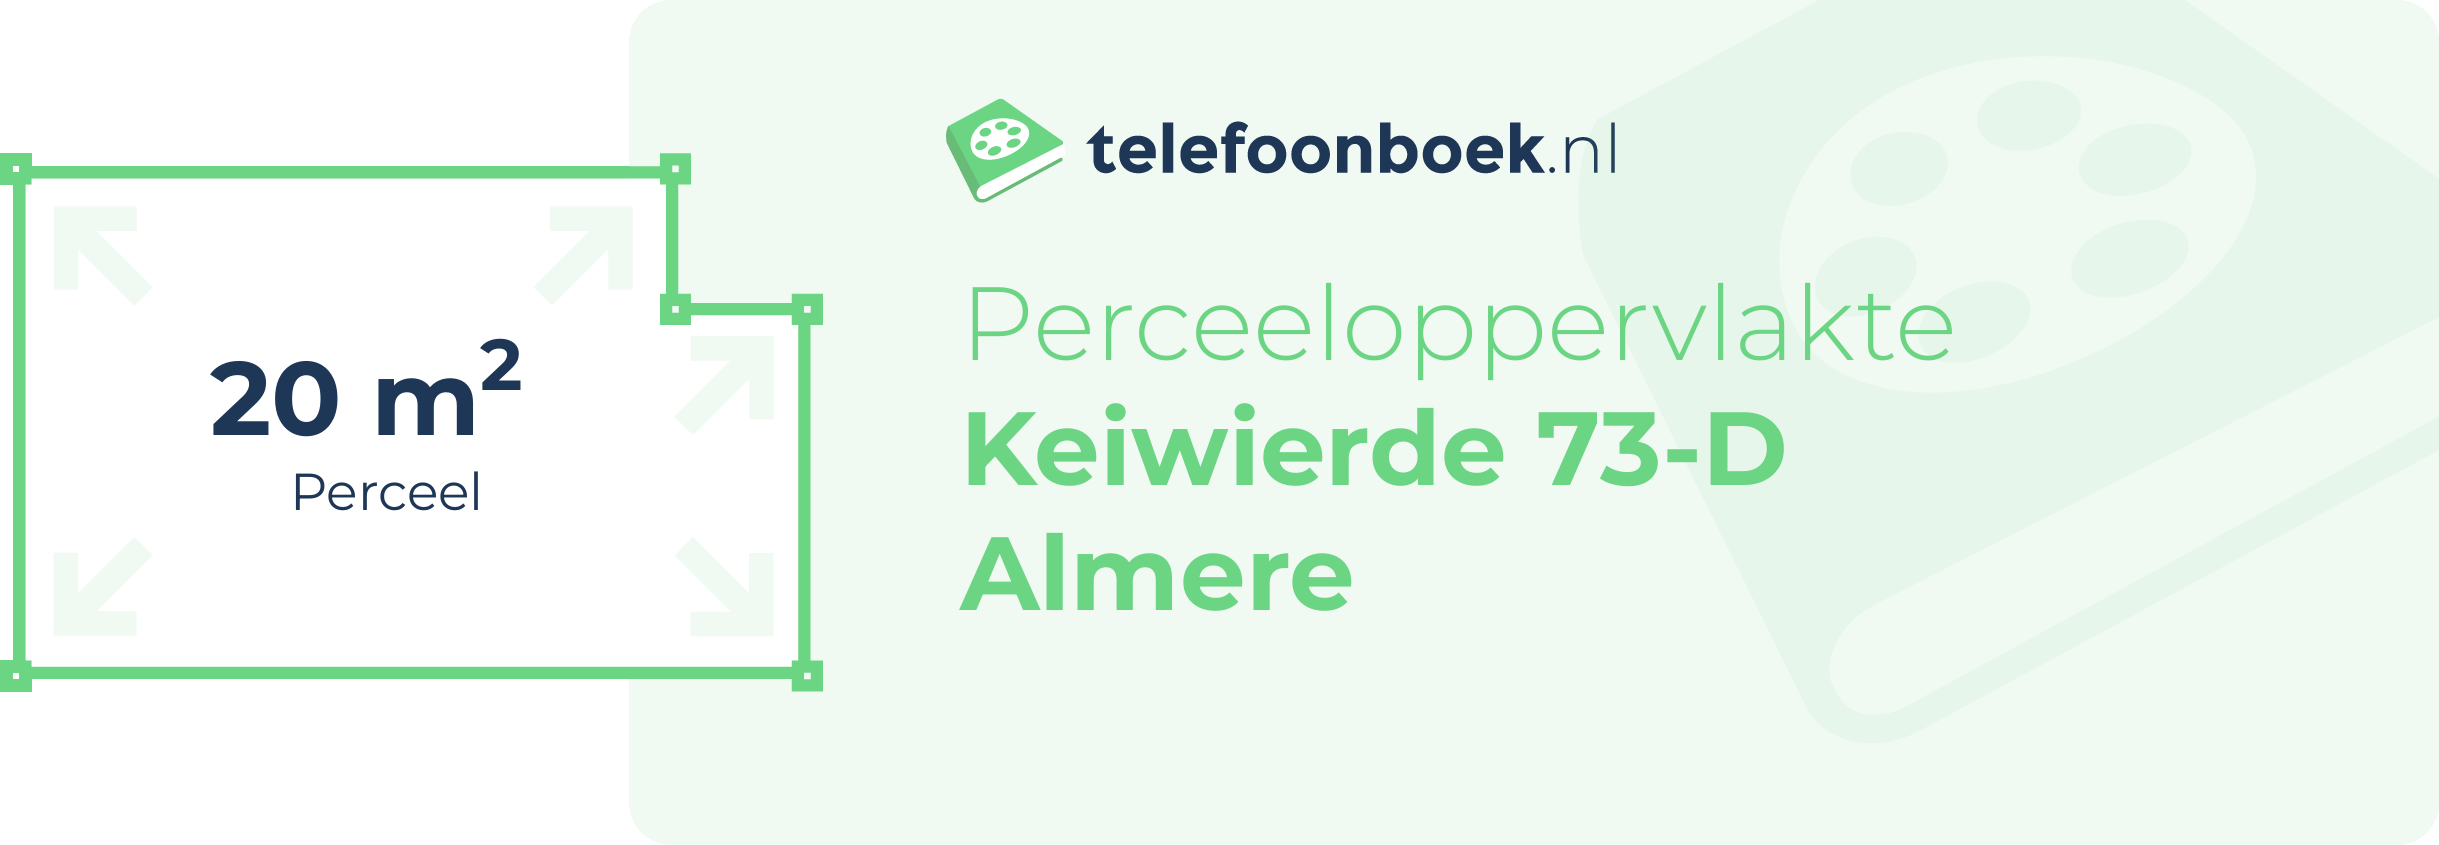 Perceeloppervlakte Keiwierde 73-D Almere